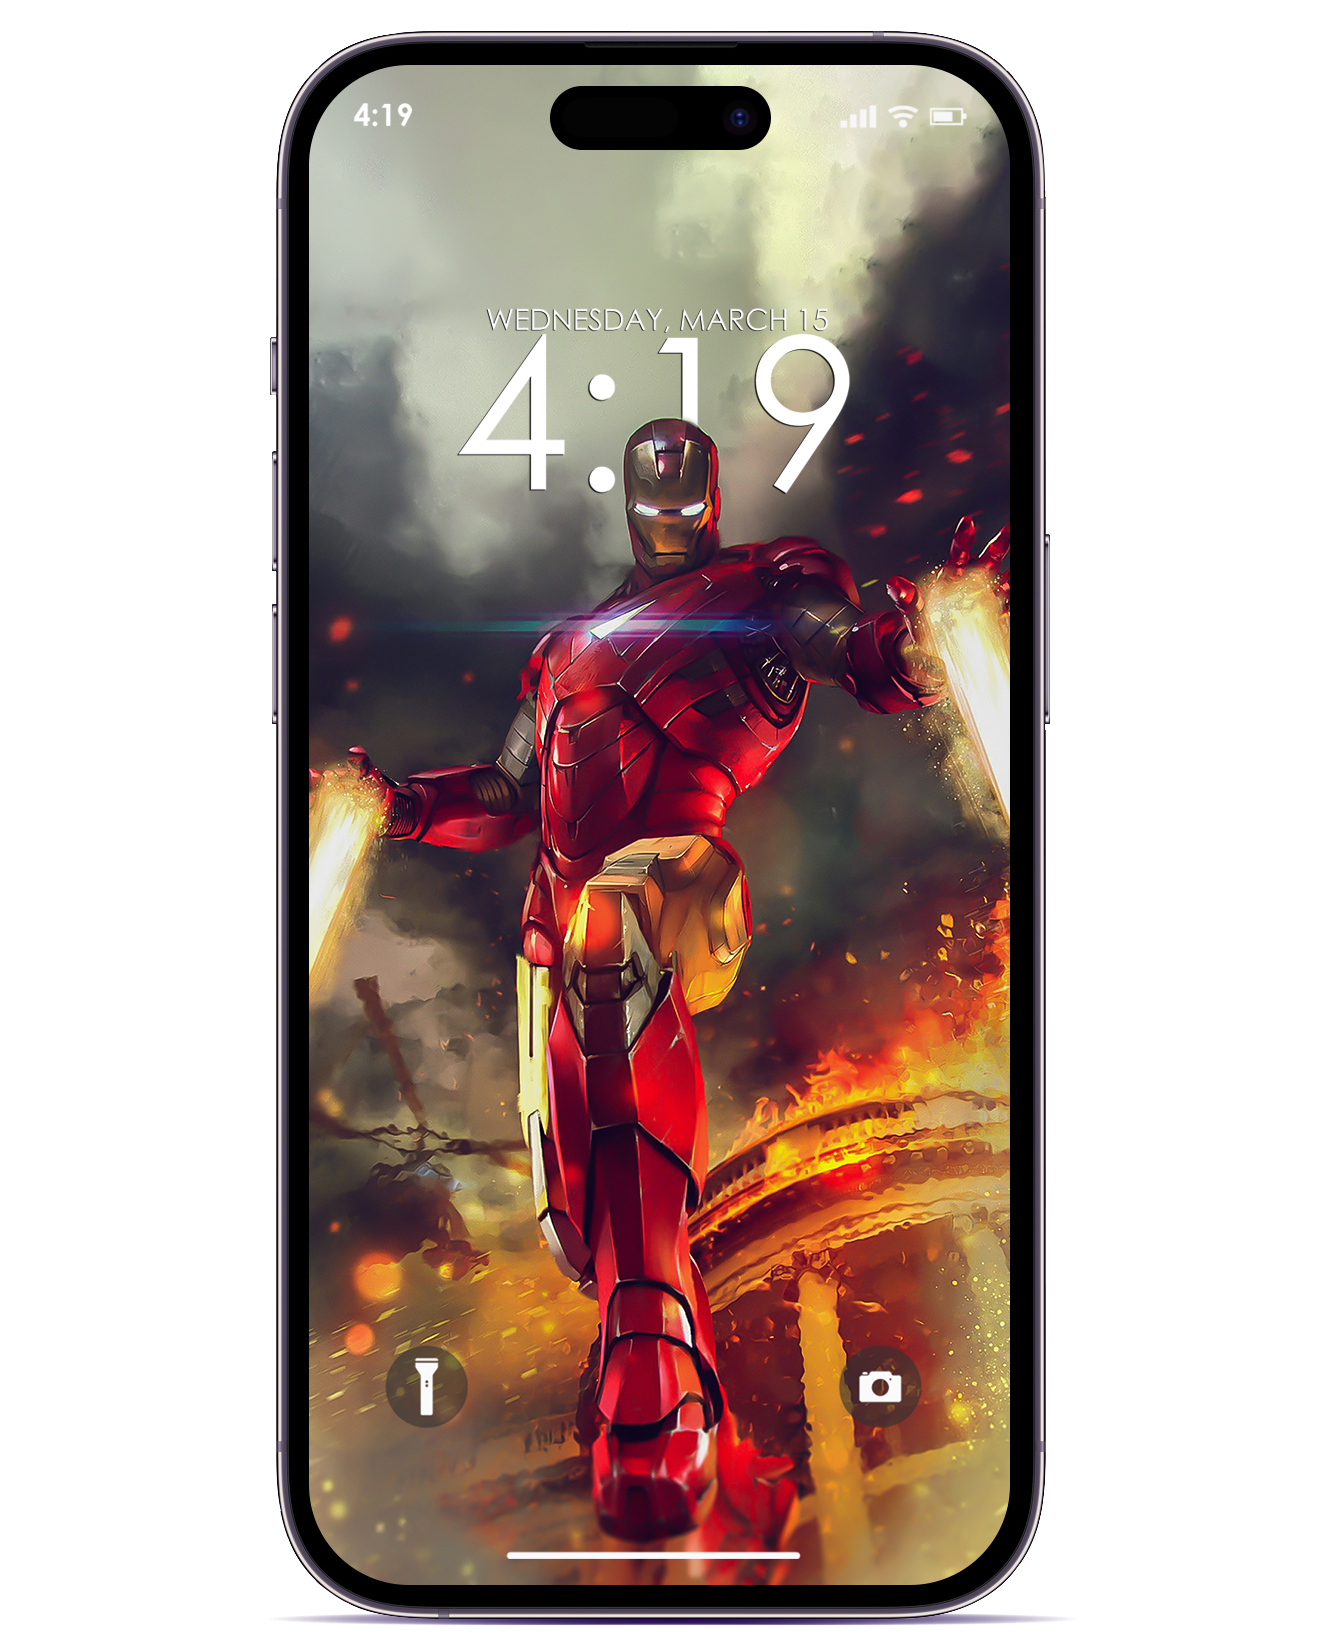 Nếu bạn là fan cuồng nhiệt của Ironman, thì hình nền iOS 16 Ironman chính là lựa chọn hoàn hảo. Với chi tiết tuyệt đẹp và hiệu ứng cực kì ấn tượng, bạn sẽ không ngừng thích thú khi nhìn vào màn hình của mình. Nhấp vào hình ảnh để tìm hiểu thêm và tải xuống hình nền iOS 16 Ironman để tạo một màn hình độc đáo theo phong cách của bạn.